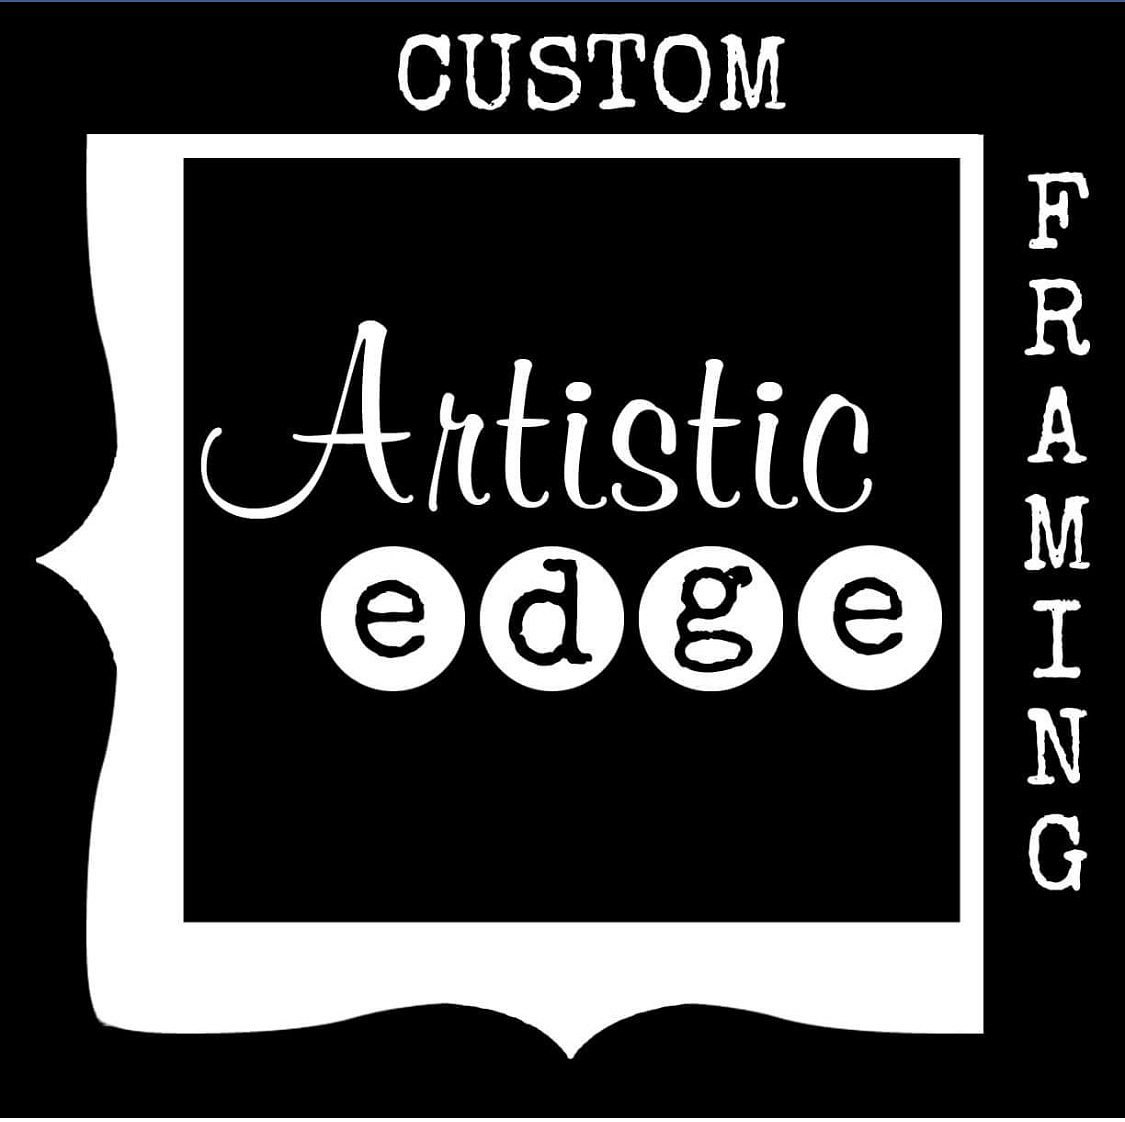 Artistic Edge Art & Framing, Лонг-Бич: лучшие советы перед поснием .